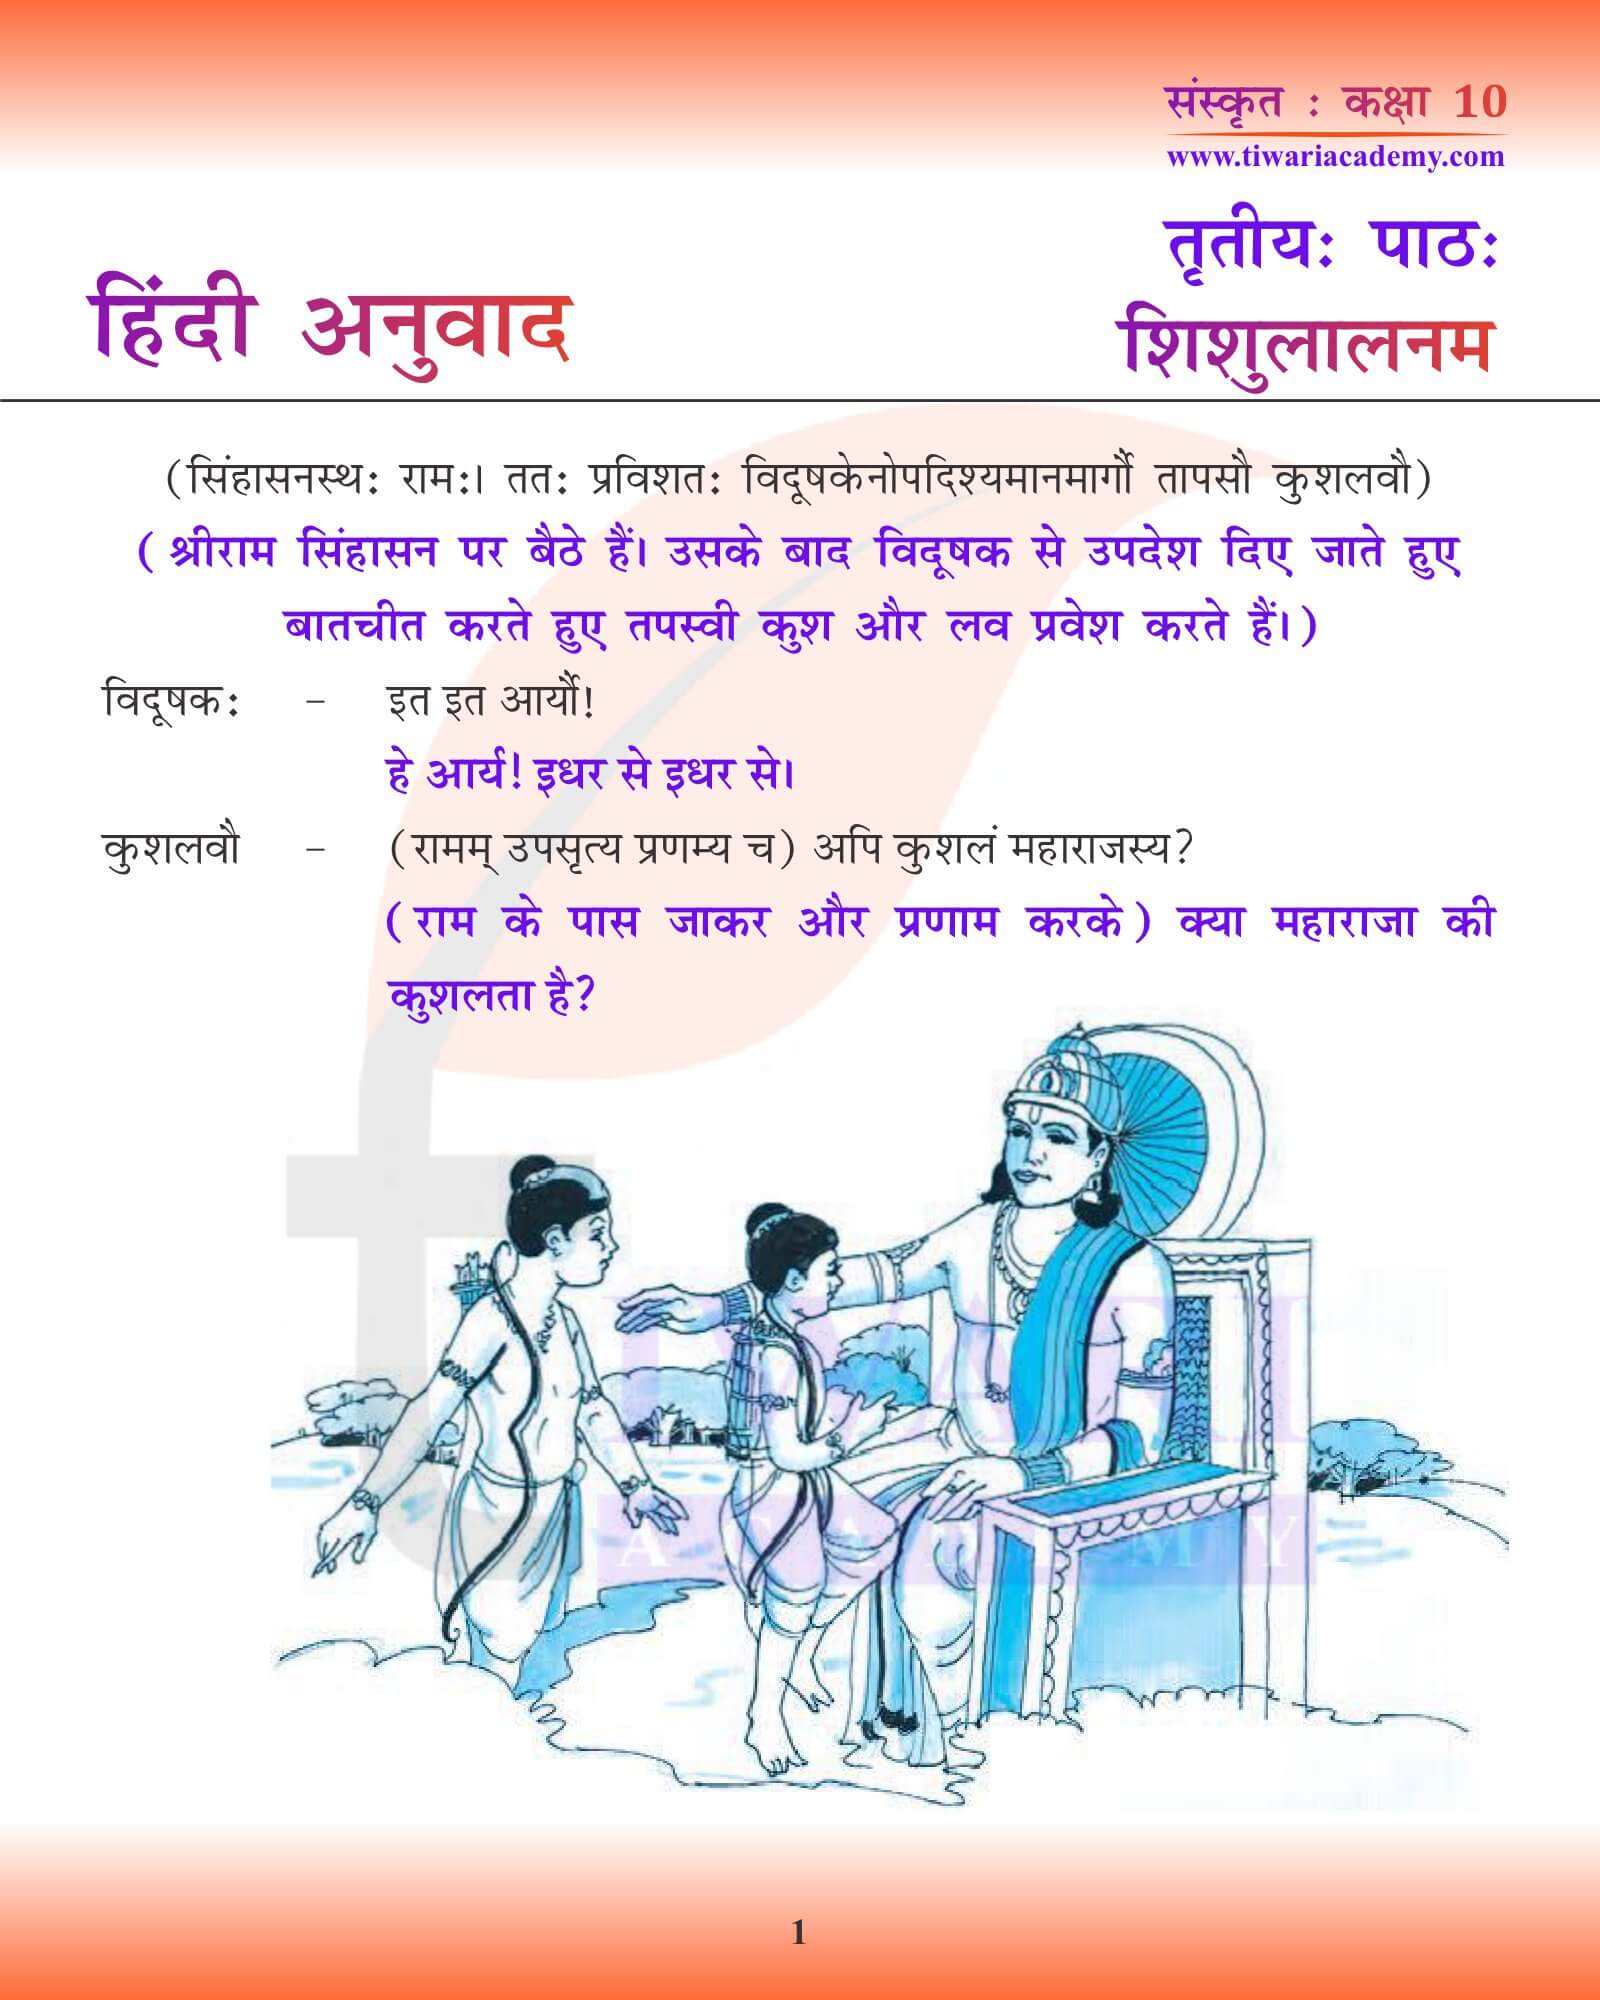 कक्षा 10 संस्कृत अध्याय 3 हिंदी में अनुवाद